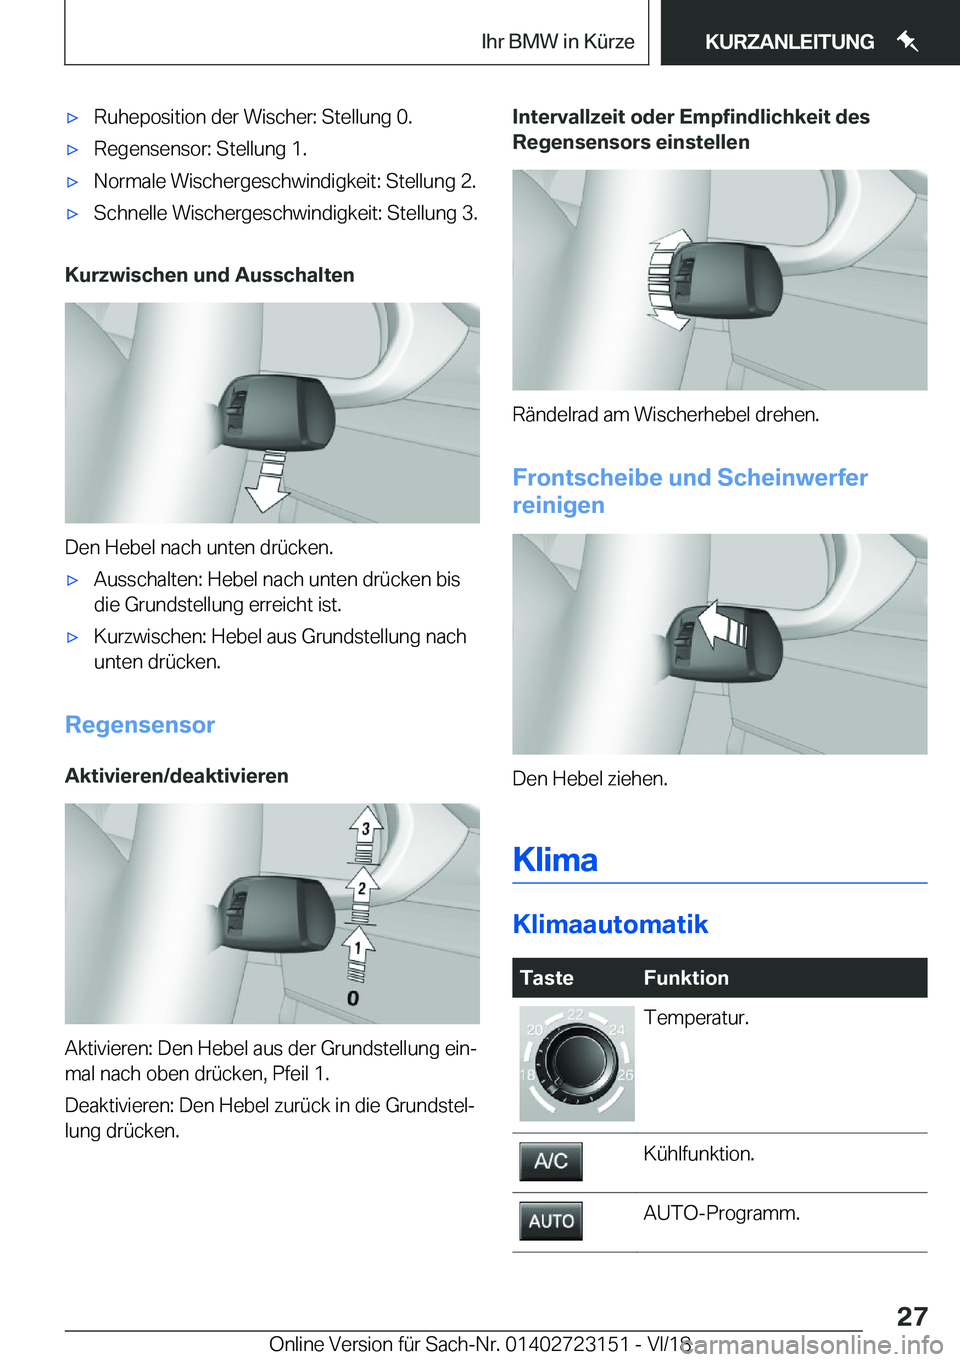 BMW 4 SERIES GRAN COUPE 2019  Betriebsanleitungen (in German) x�R�u�h�e�p�o�s�i�t�i�o�n��d�e�r��W�i�s�c�h�e�r�:��S�t�e�l�l�u�n�g��0�.x�R�e�g�e�n�s�e�n�s�o�r�:��S�t�e�l�l�u�n�g��1�.x�N�o�r�m�a�l�e��W�i�s�c�h�e�r�g�e�s�c�h�w�i�n�d�i�g�k�e�i�t�:��S�t�e�l